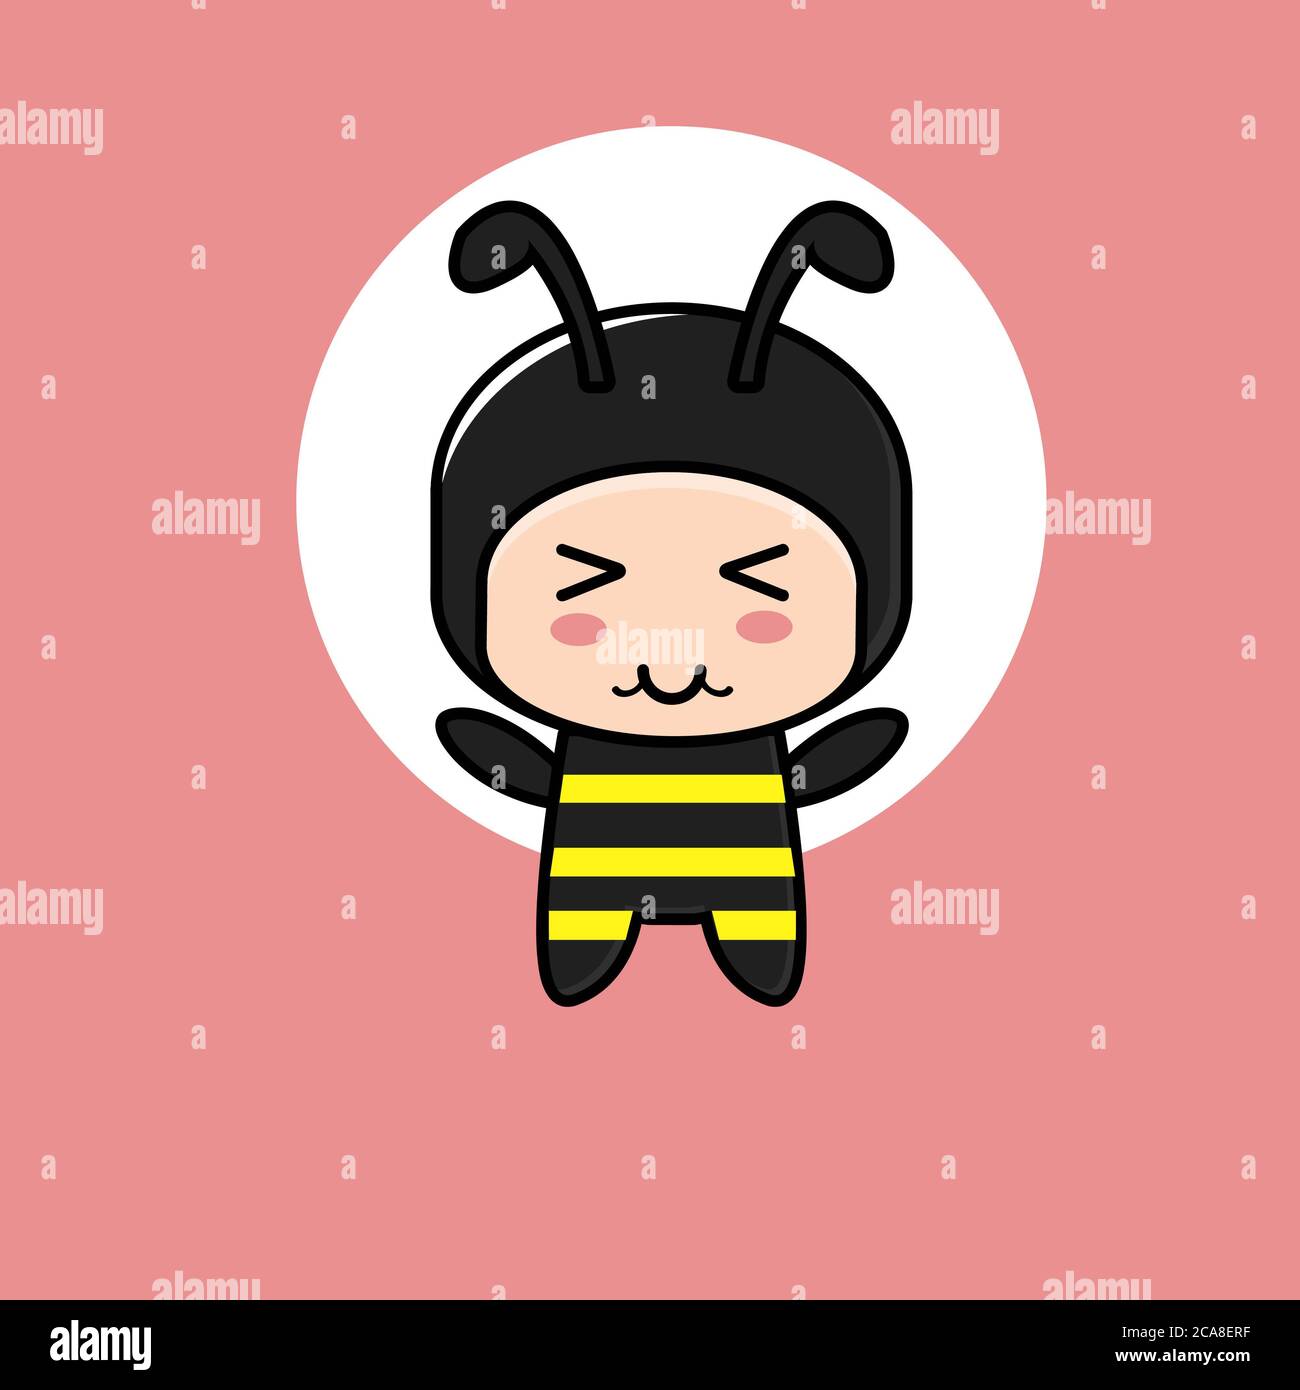 Cute Little Bee Girls Clip Art Set 